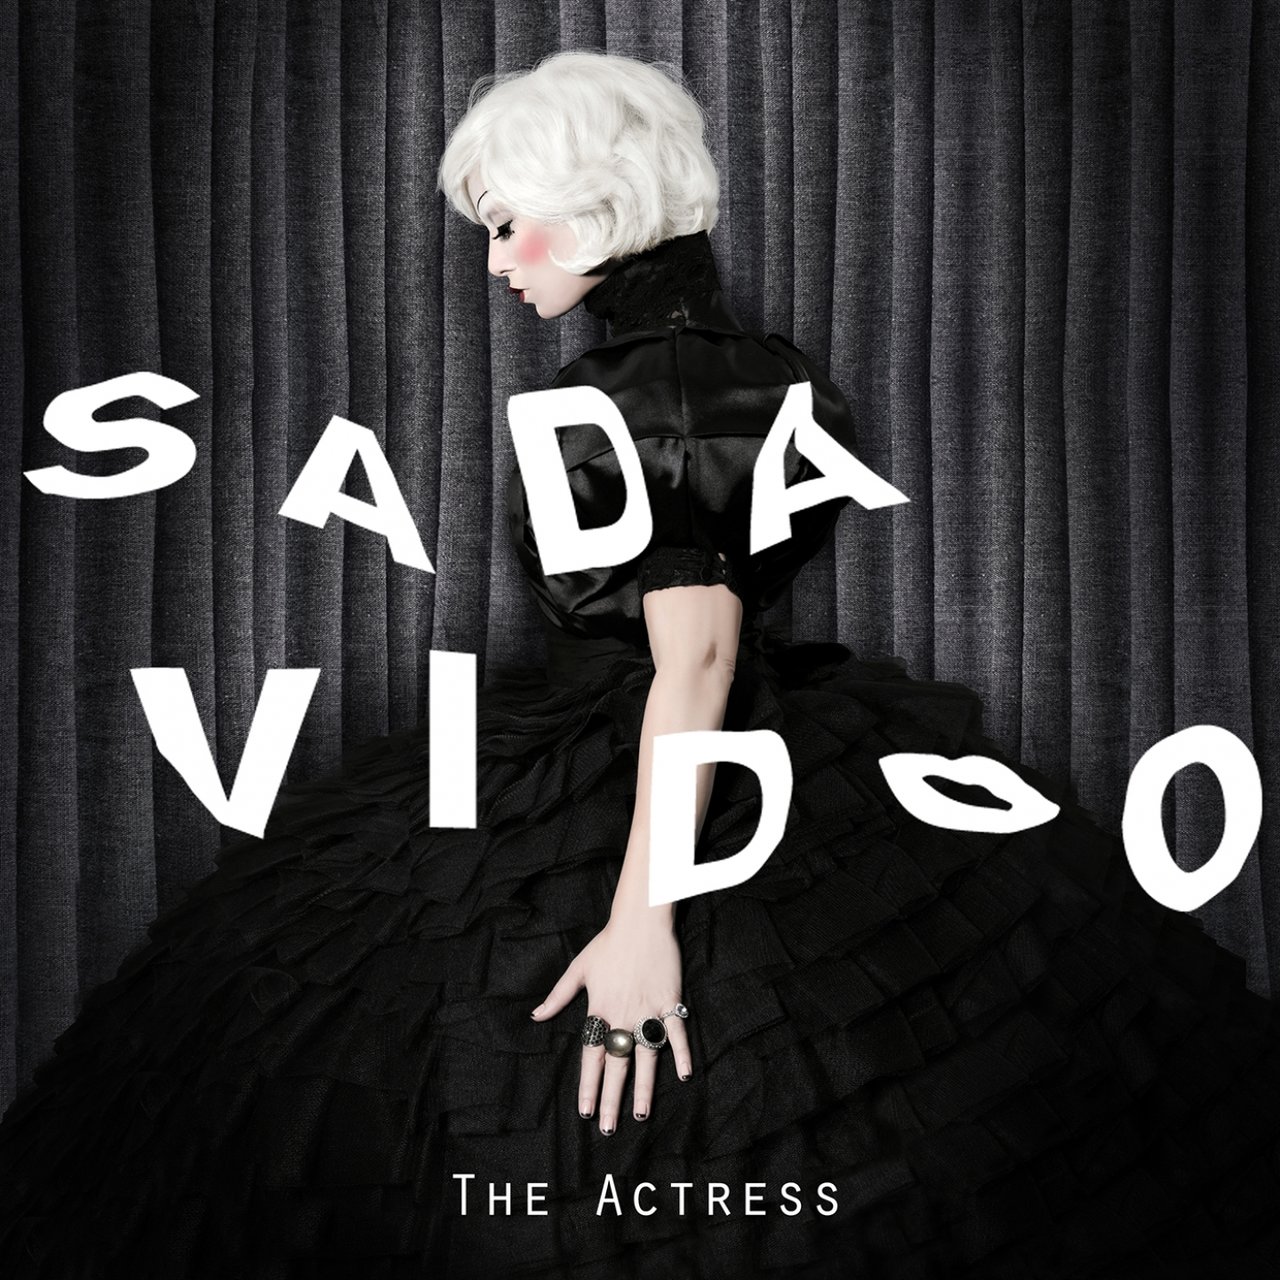 Sada Vidoo — The Actress cover artwork